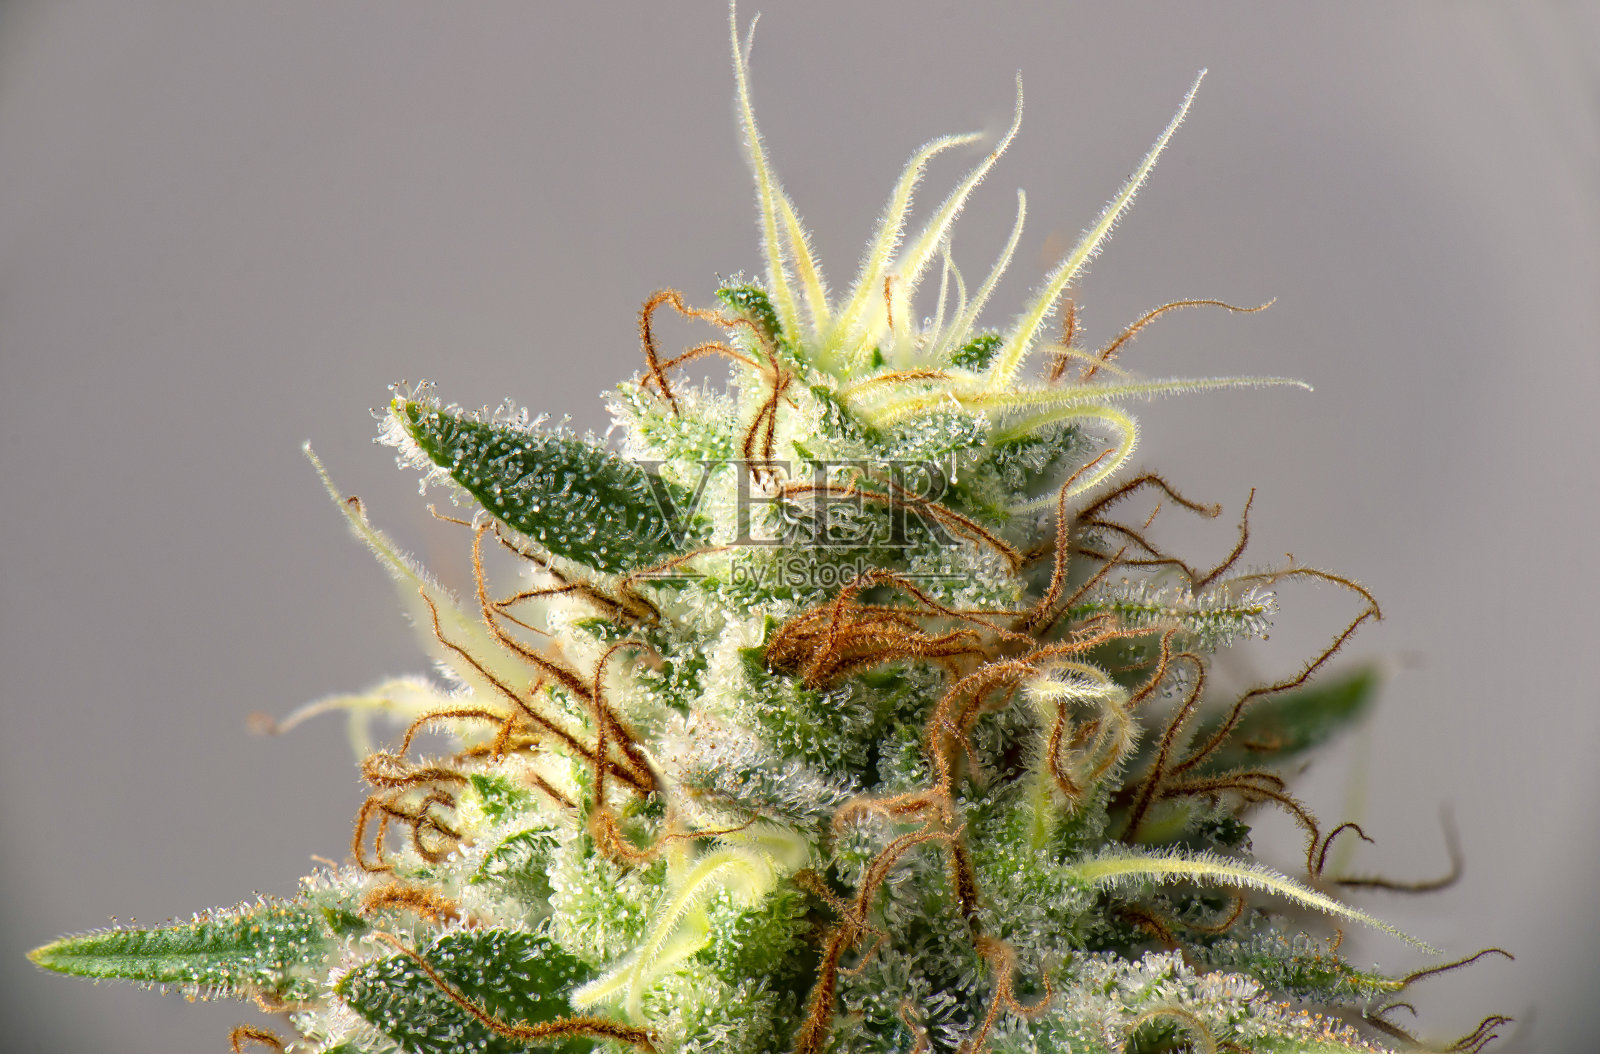 大麻花(白色临界品系)具可见毛状体照片摄影图片